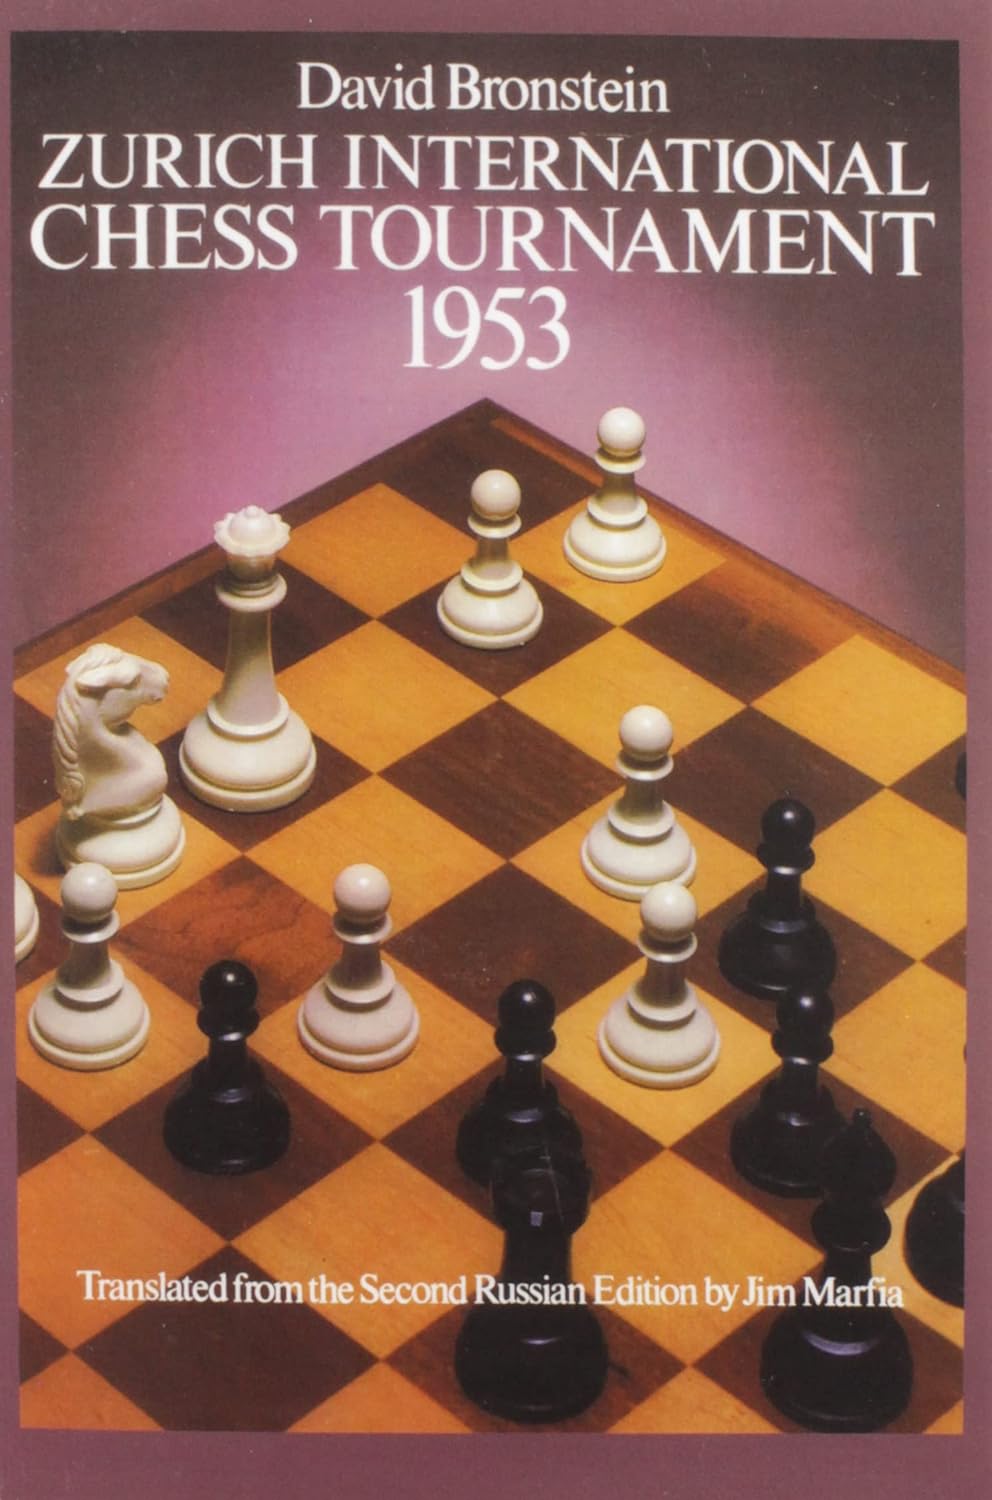 Zurich International Chess Tournament, 1953 by David Bronstein